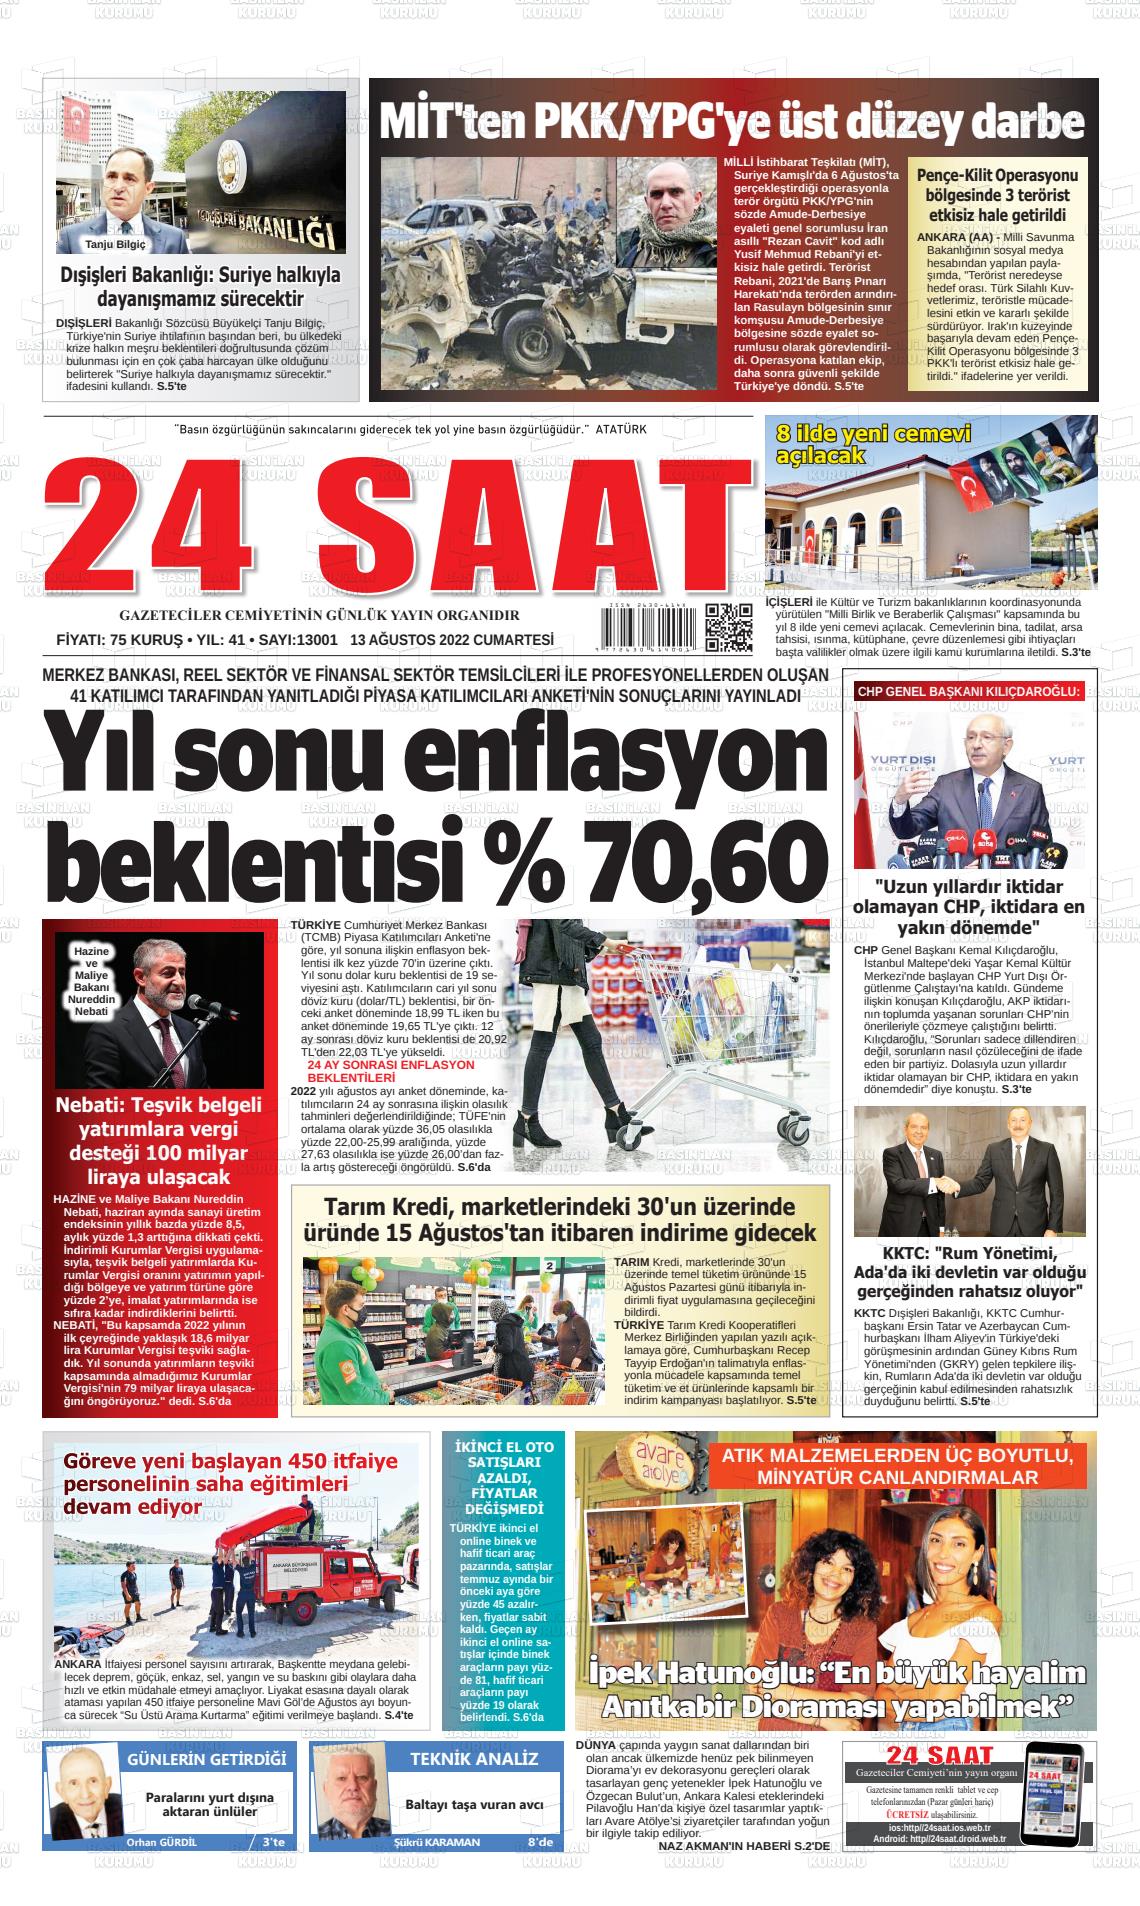 13 Ağustos 2022 24 Saat Gazete Manşeti